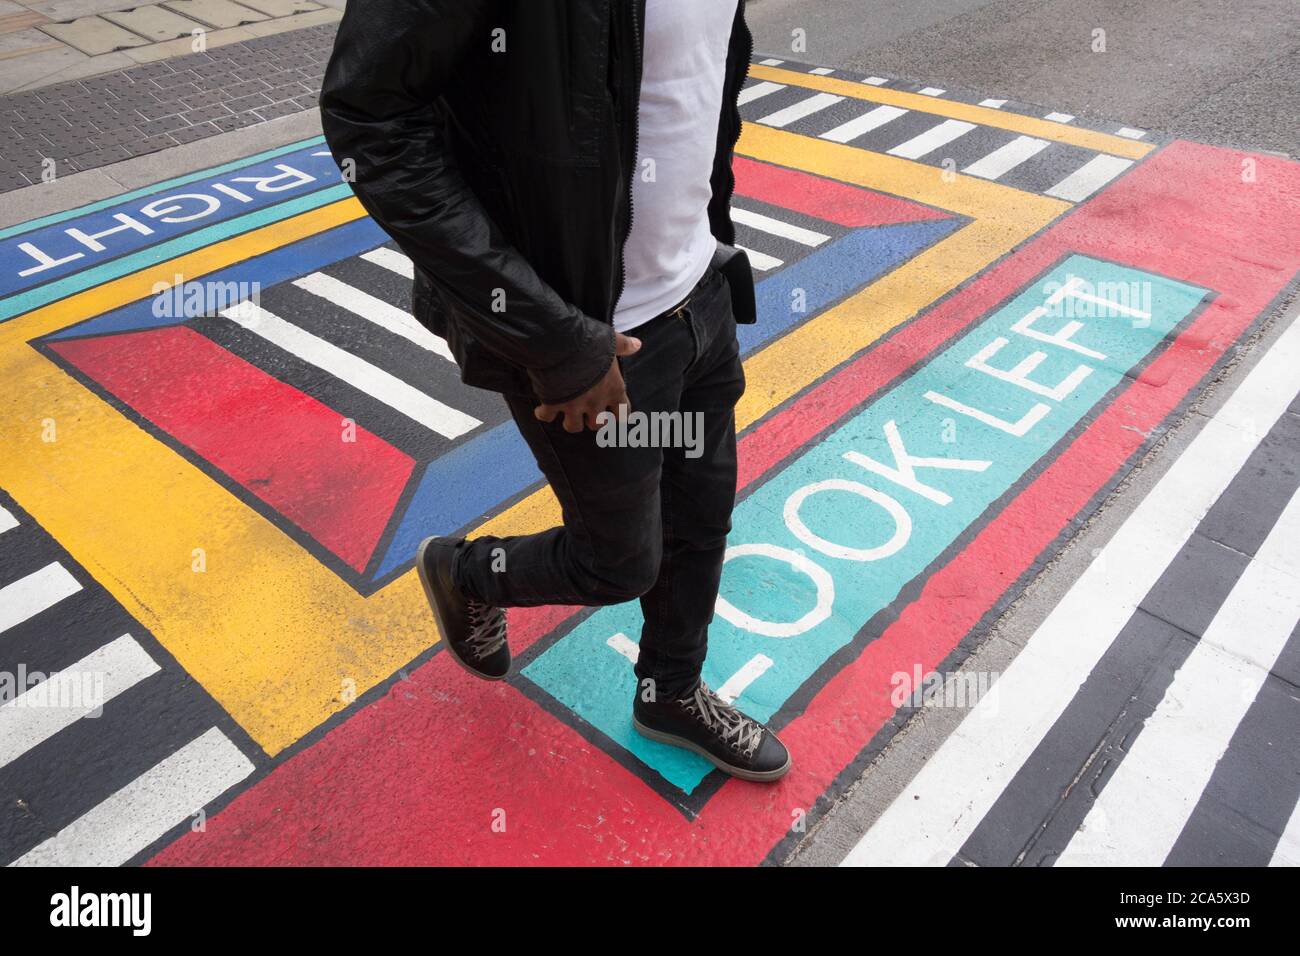 Nahaufnahme eines Mannes, der die geometrischen Fußgängerübergänge des französischen Künstlers Camille Walala vor der U-Bahnstation White City im Westen Londons durchquert Stockfoto